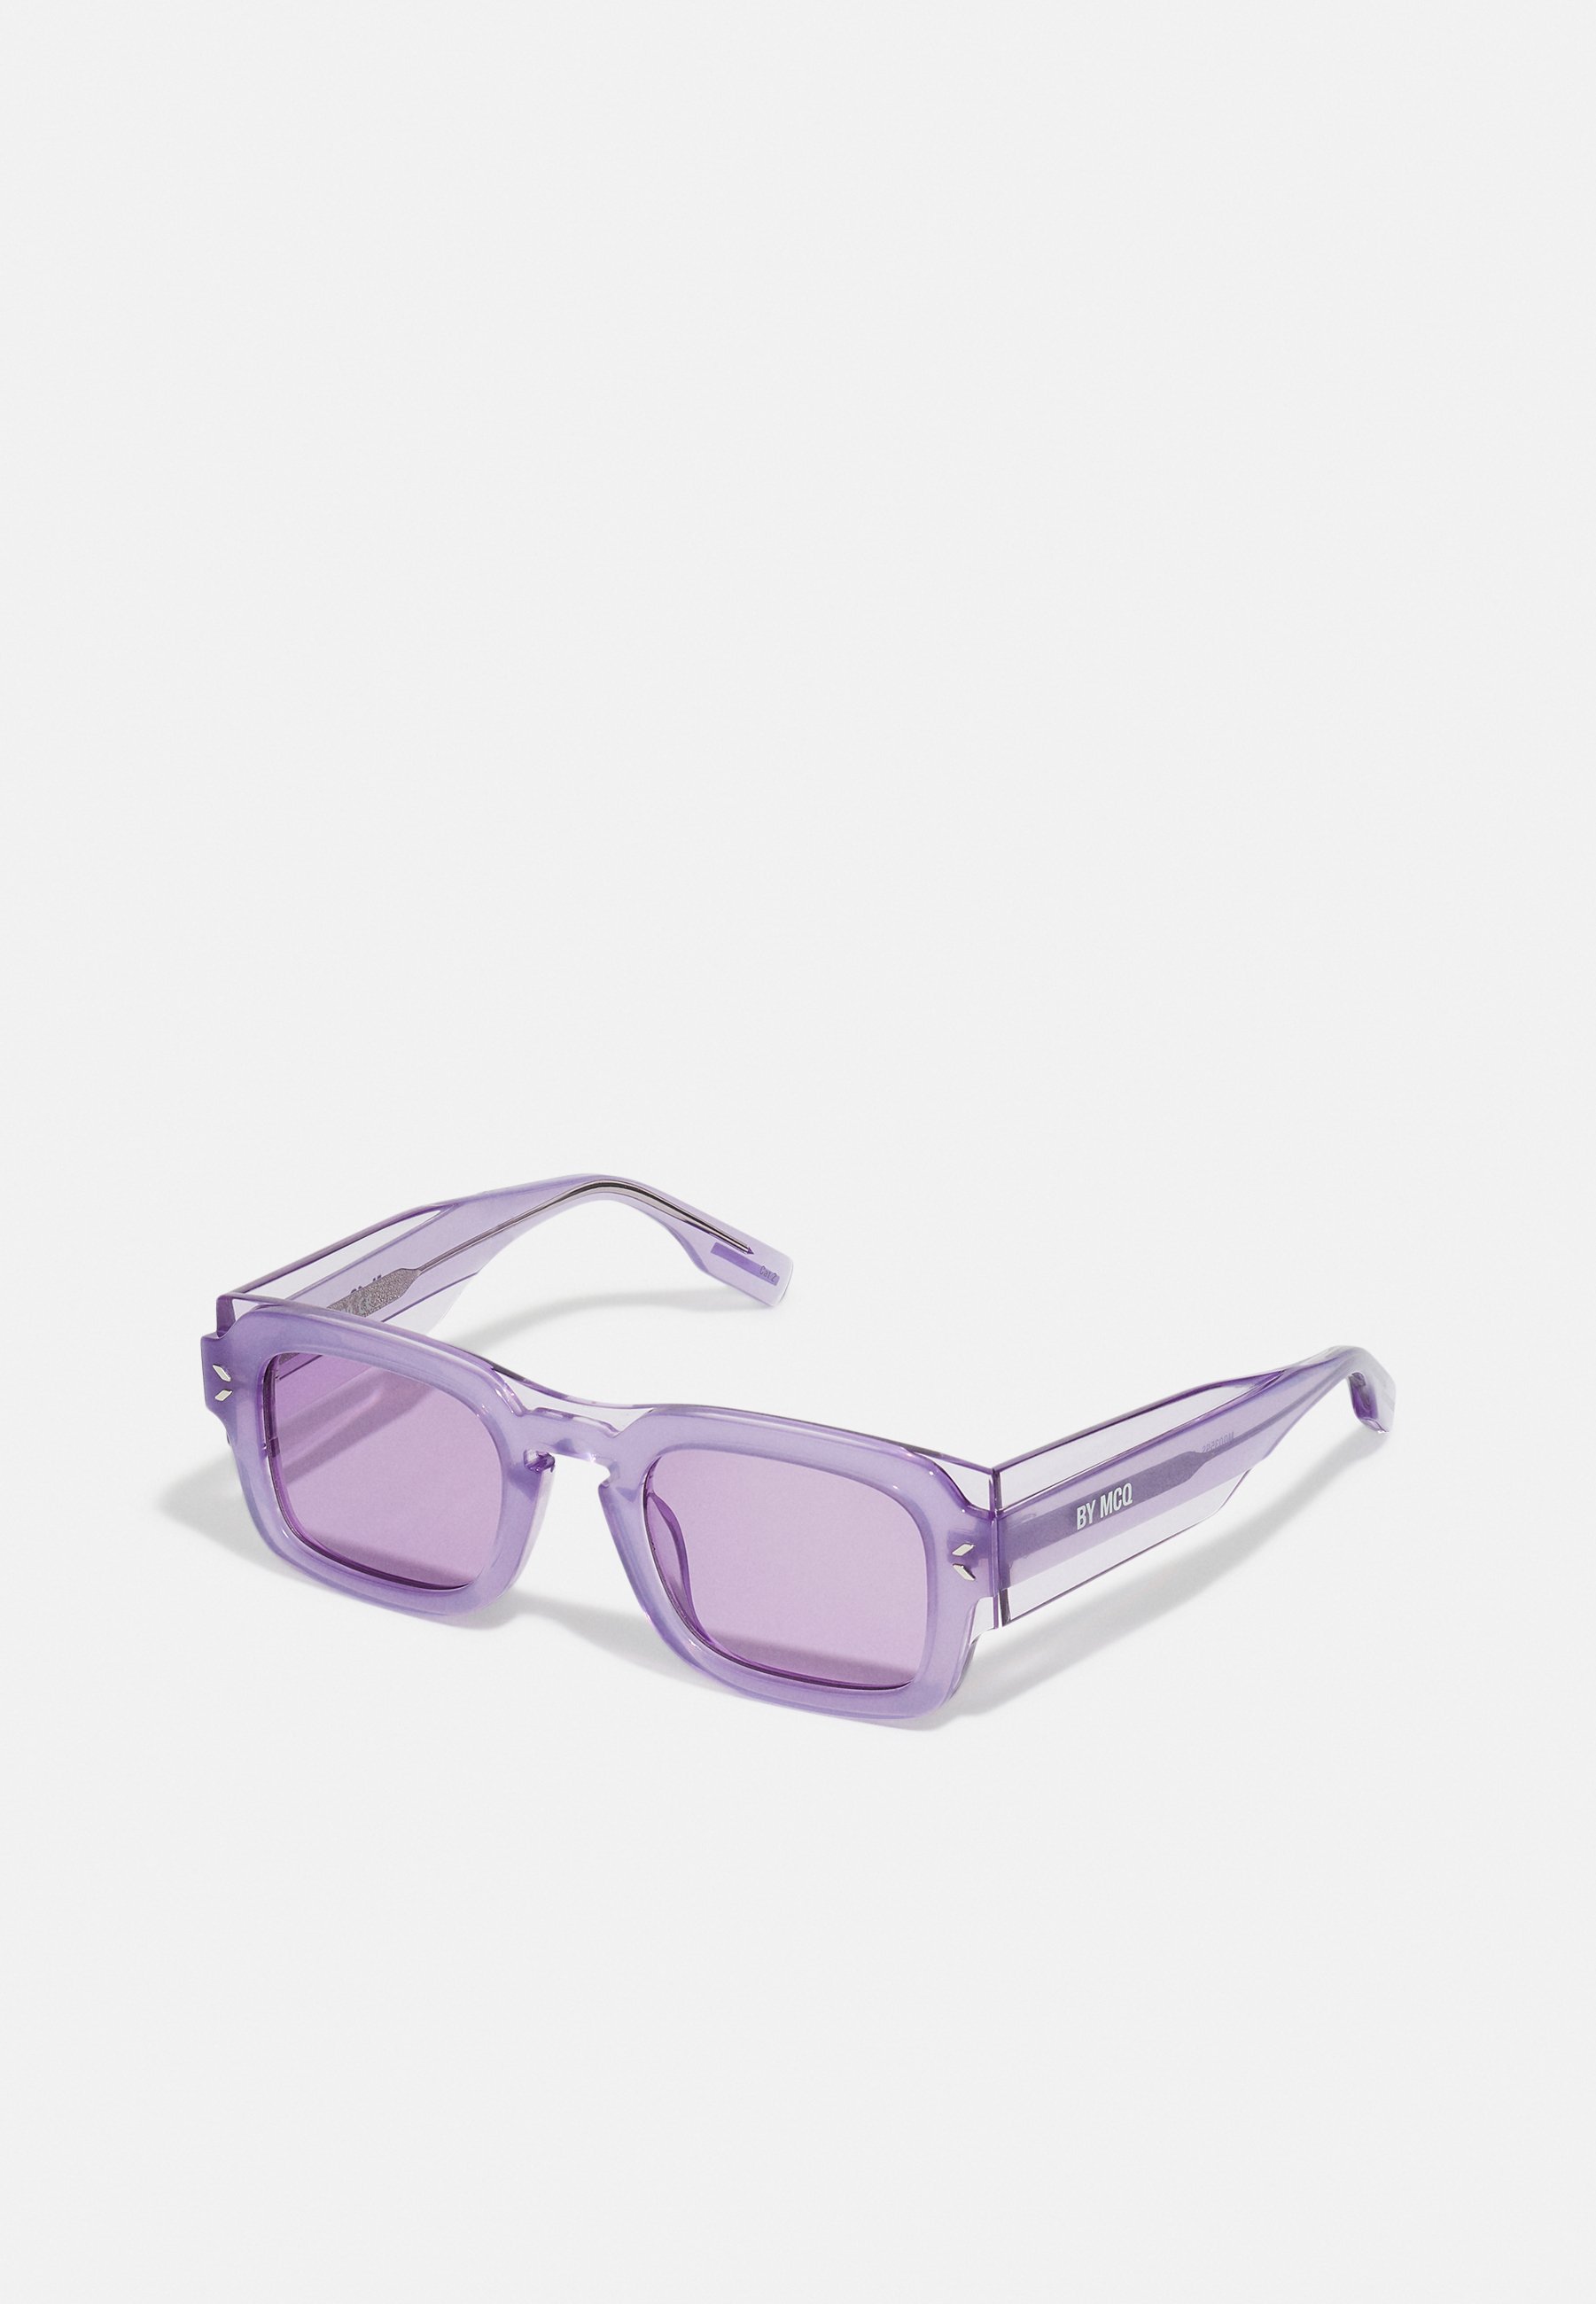 McQ Alexander McQueen UNISEX - Sonnenbrille - violet/flieder